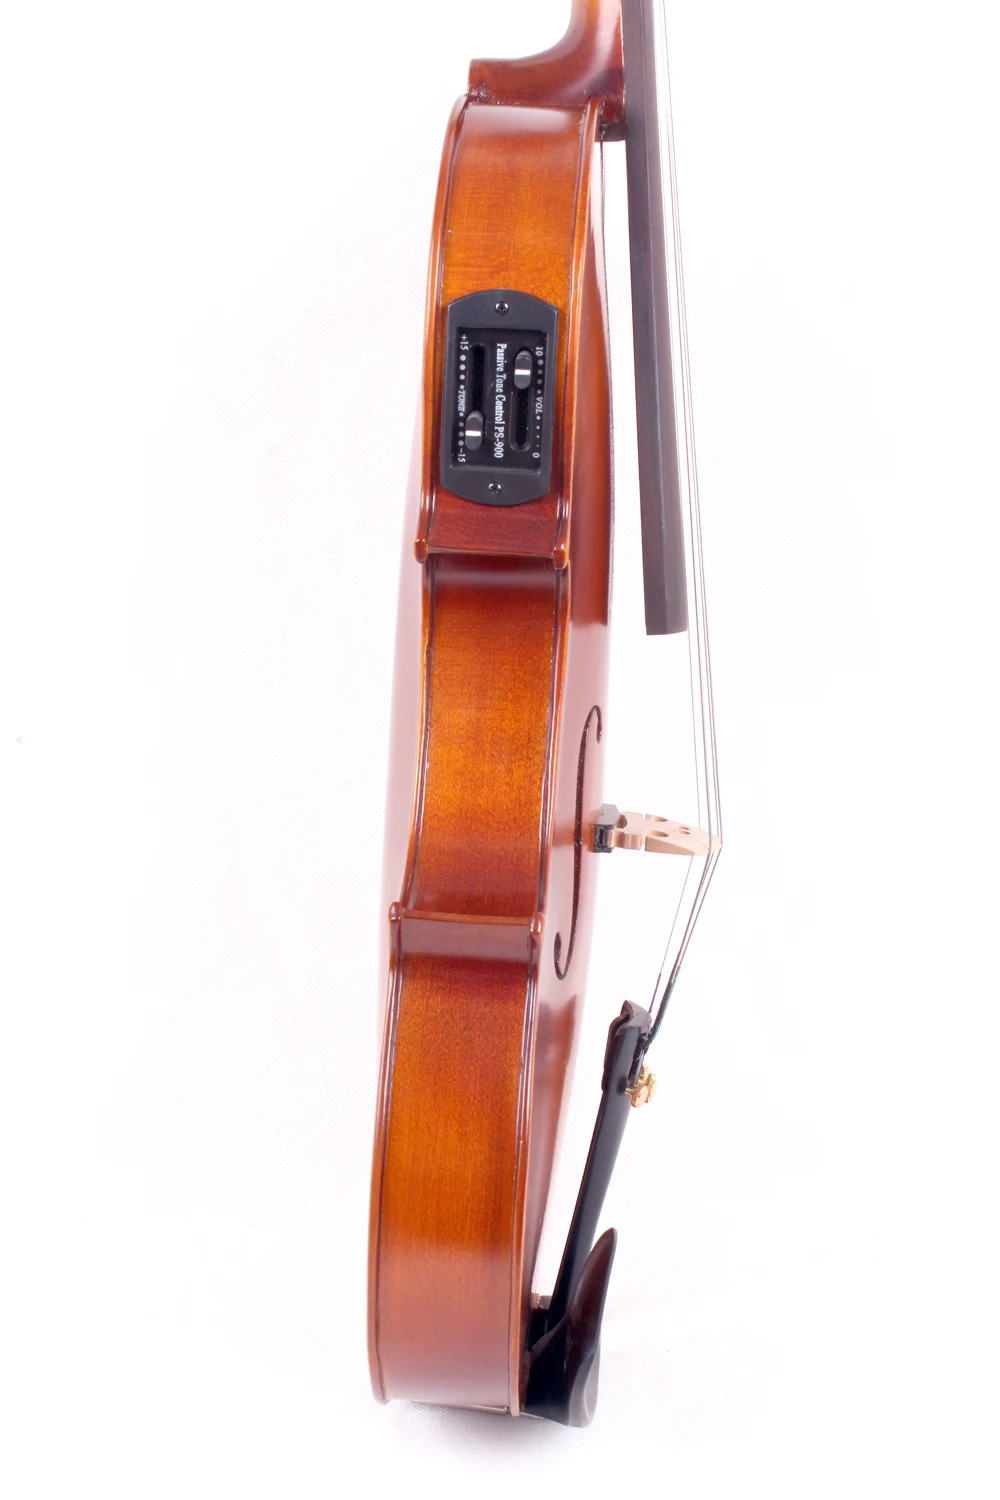 Yinfente электрическая акустическая скрипка 4/4 клен+ ель ручной работы сладкий тон бесплатно чехол+ Бант# EV1